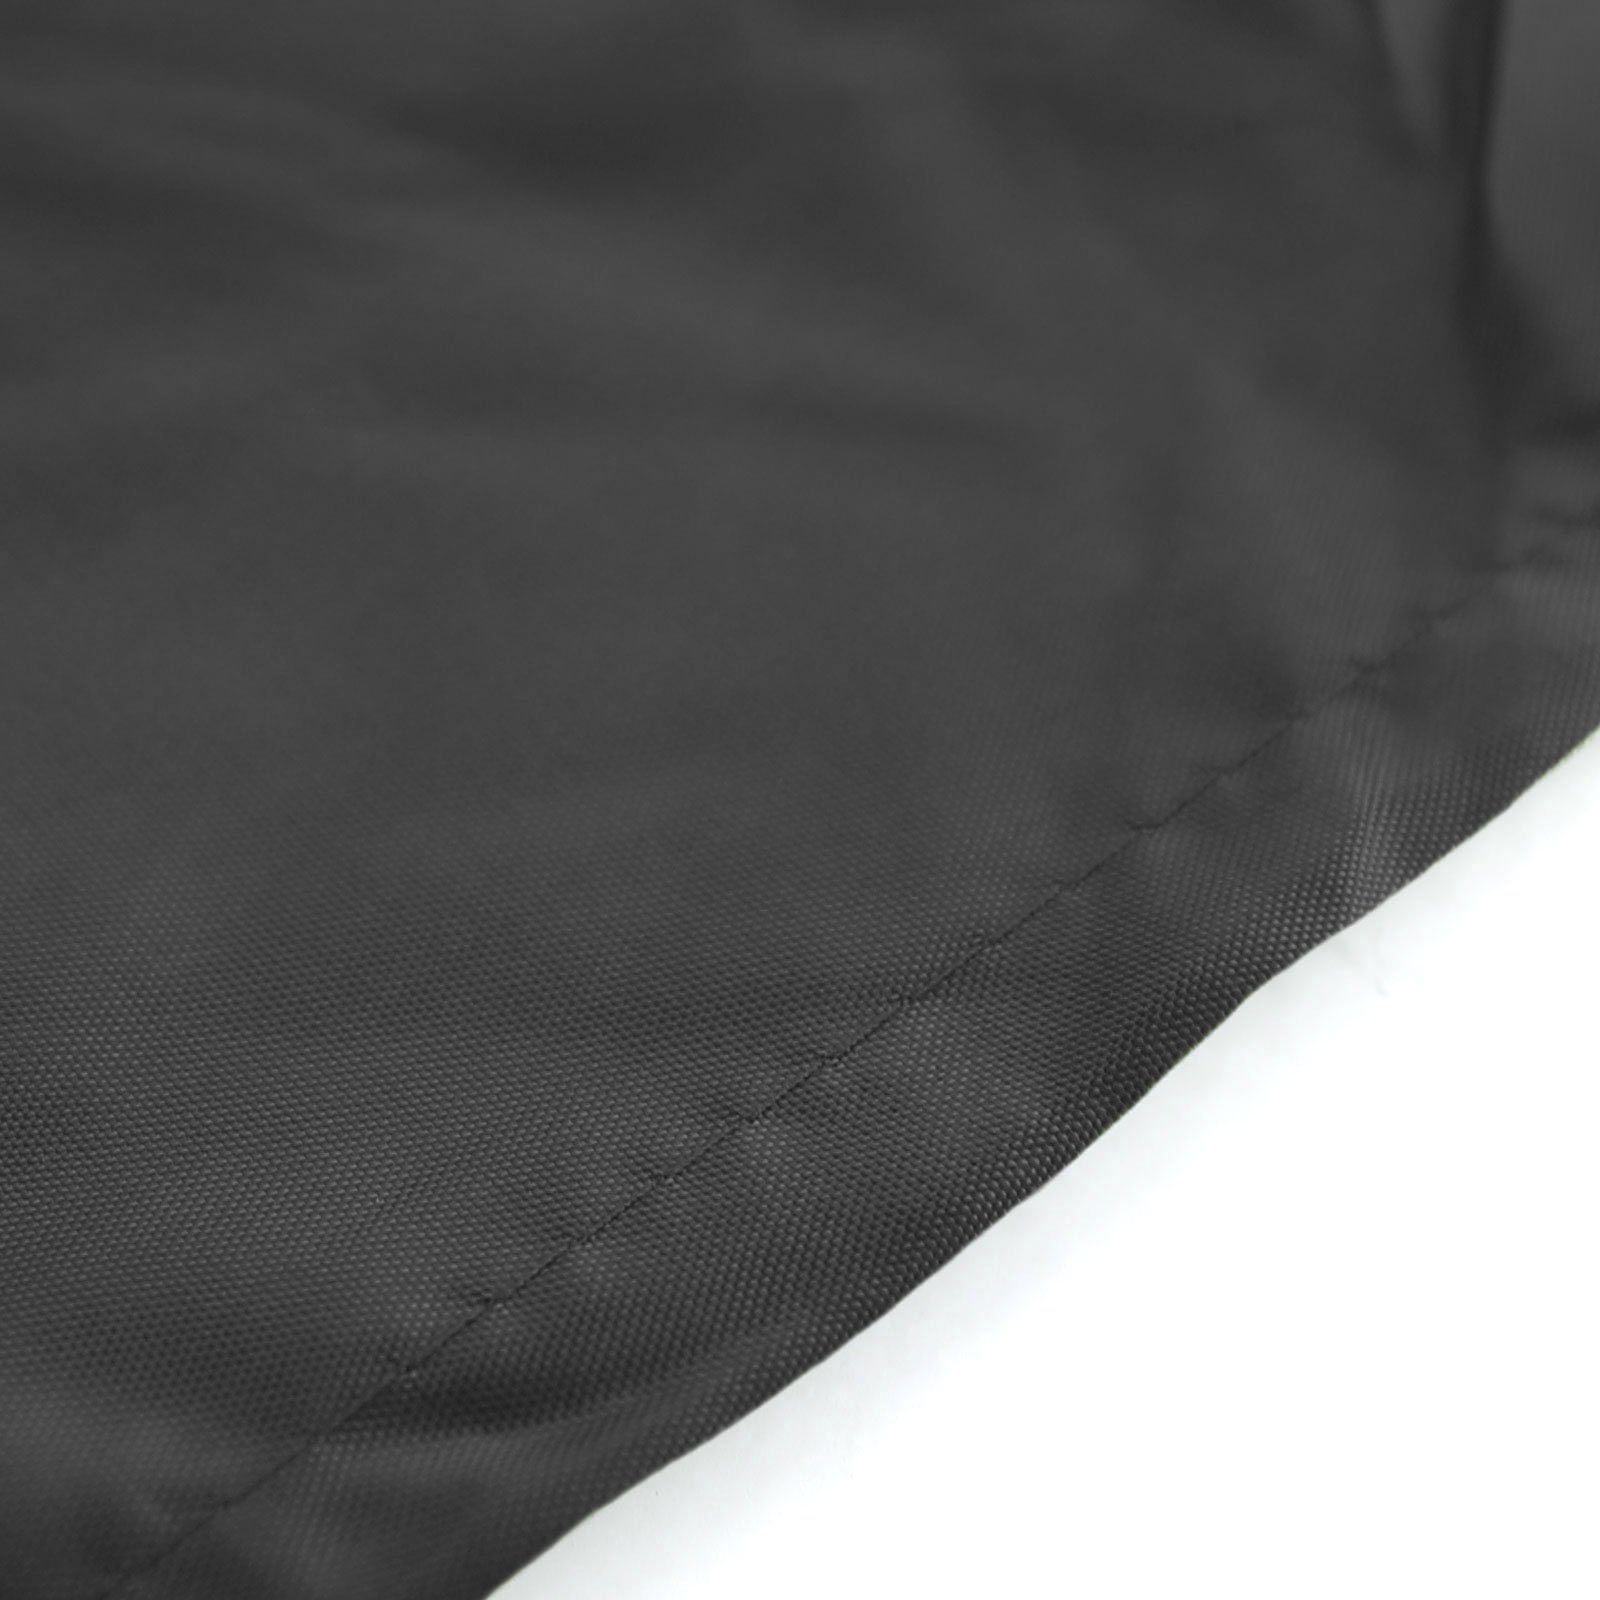 Schutzhülle Schutzabdeckung RAMROXX 190x100cm Premium Hängesessel Cover Hängesessel für Schwarz